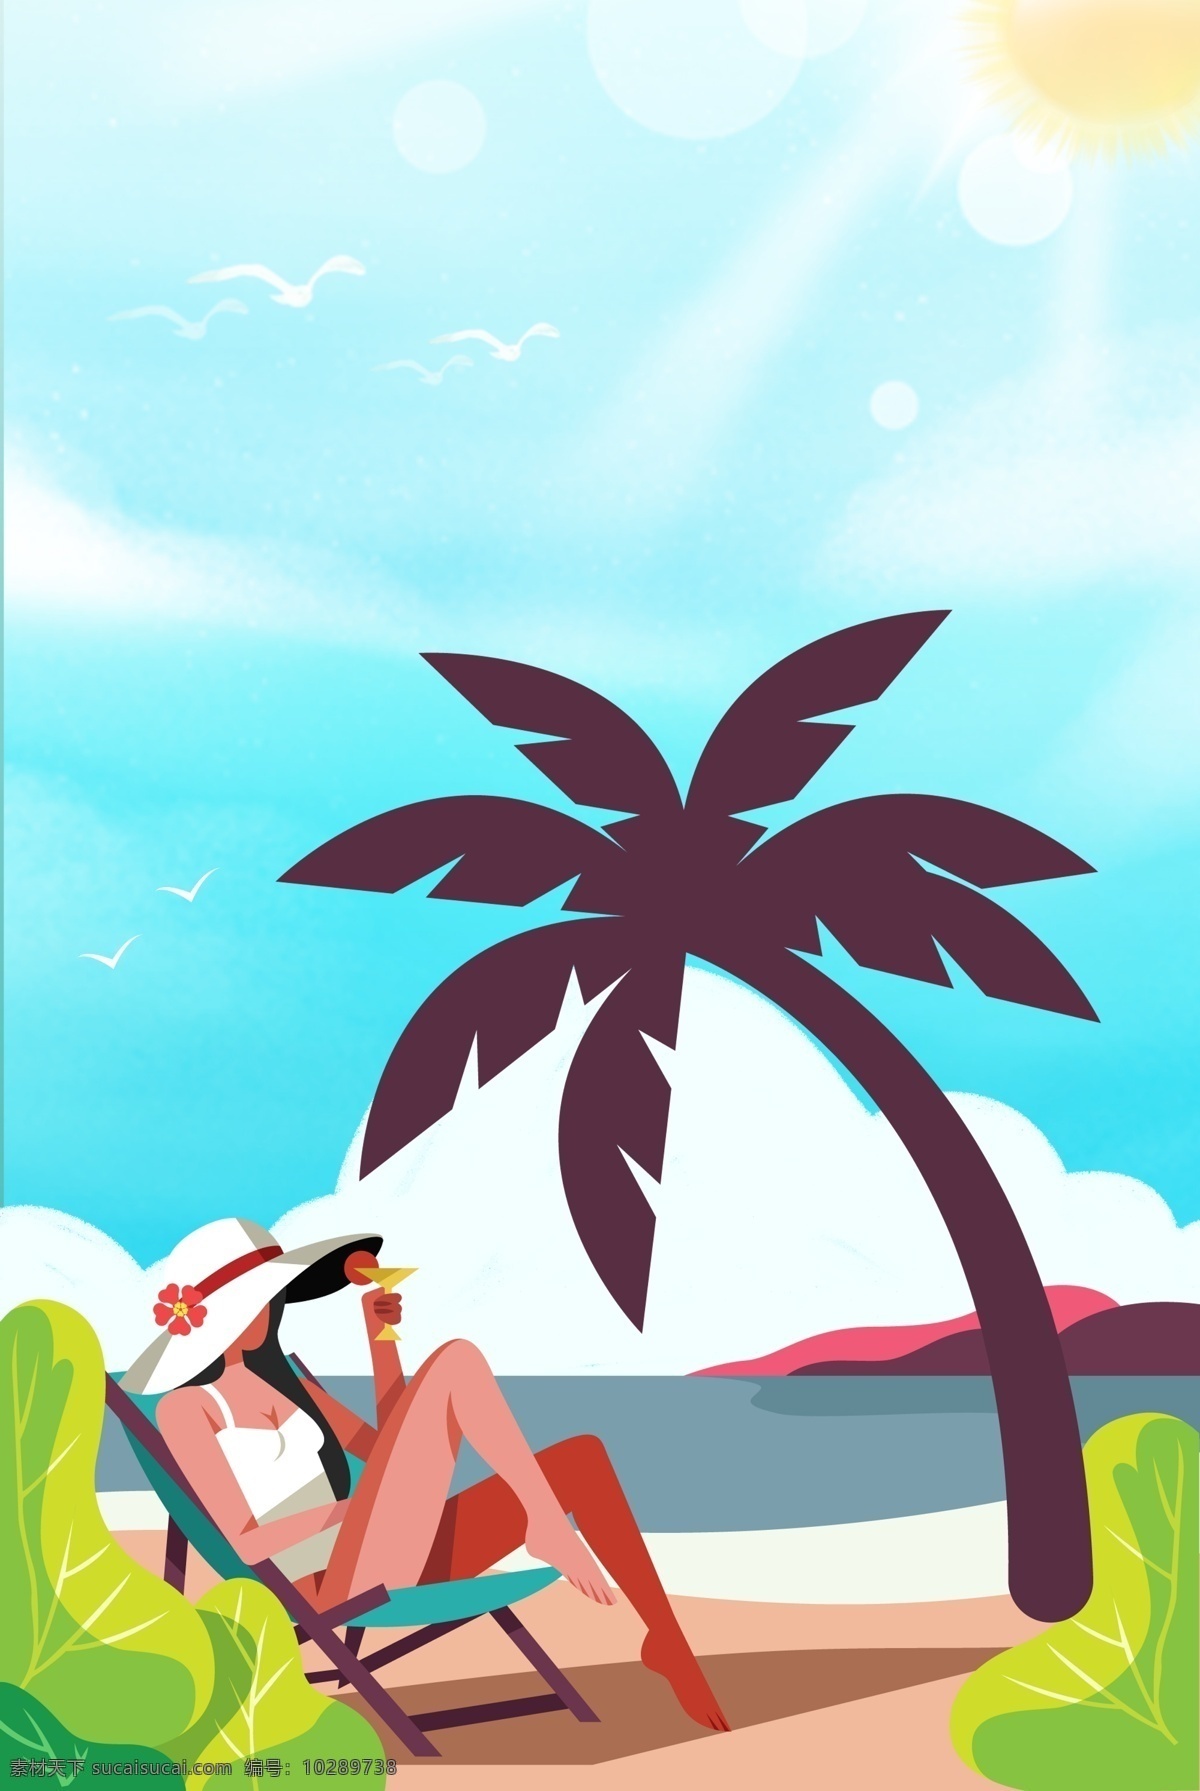 创意 简约 海景 自然风光 合成 背景 自然风景 风景 海边 海鸥 椰子树 海岛 卡通